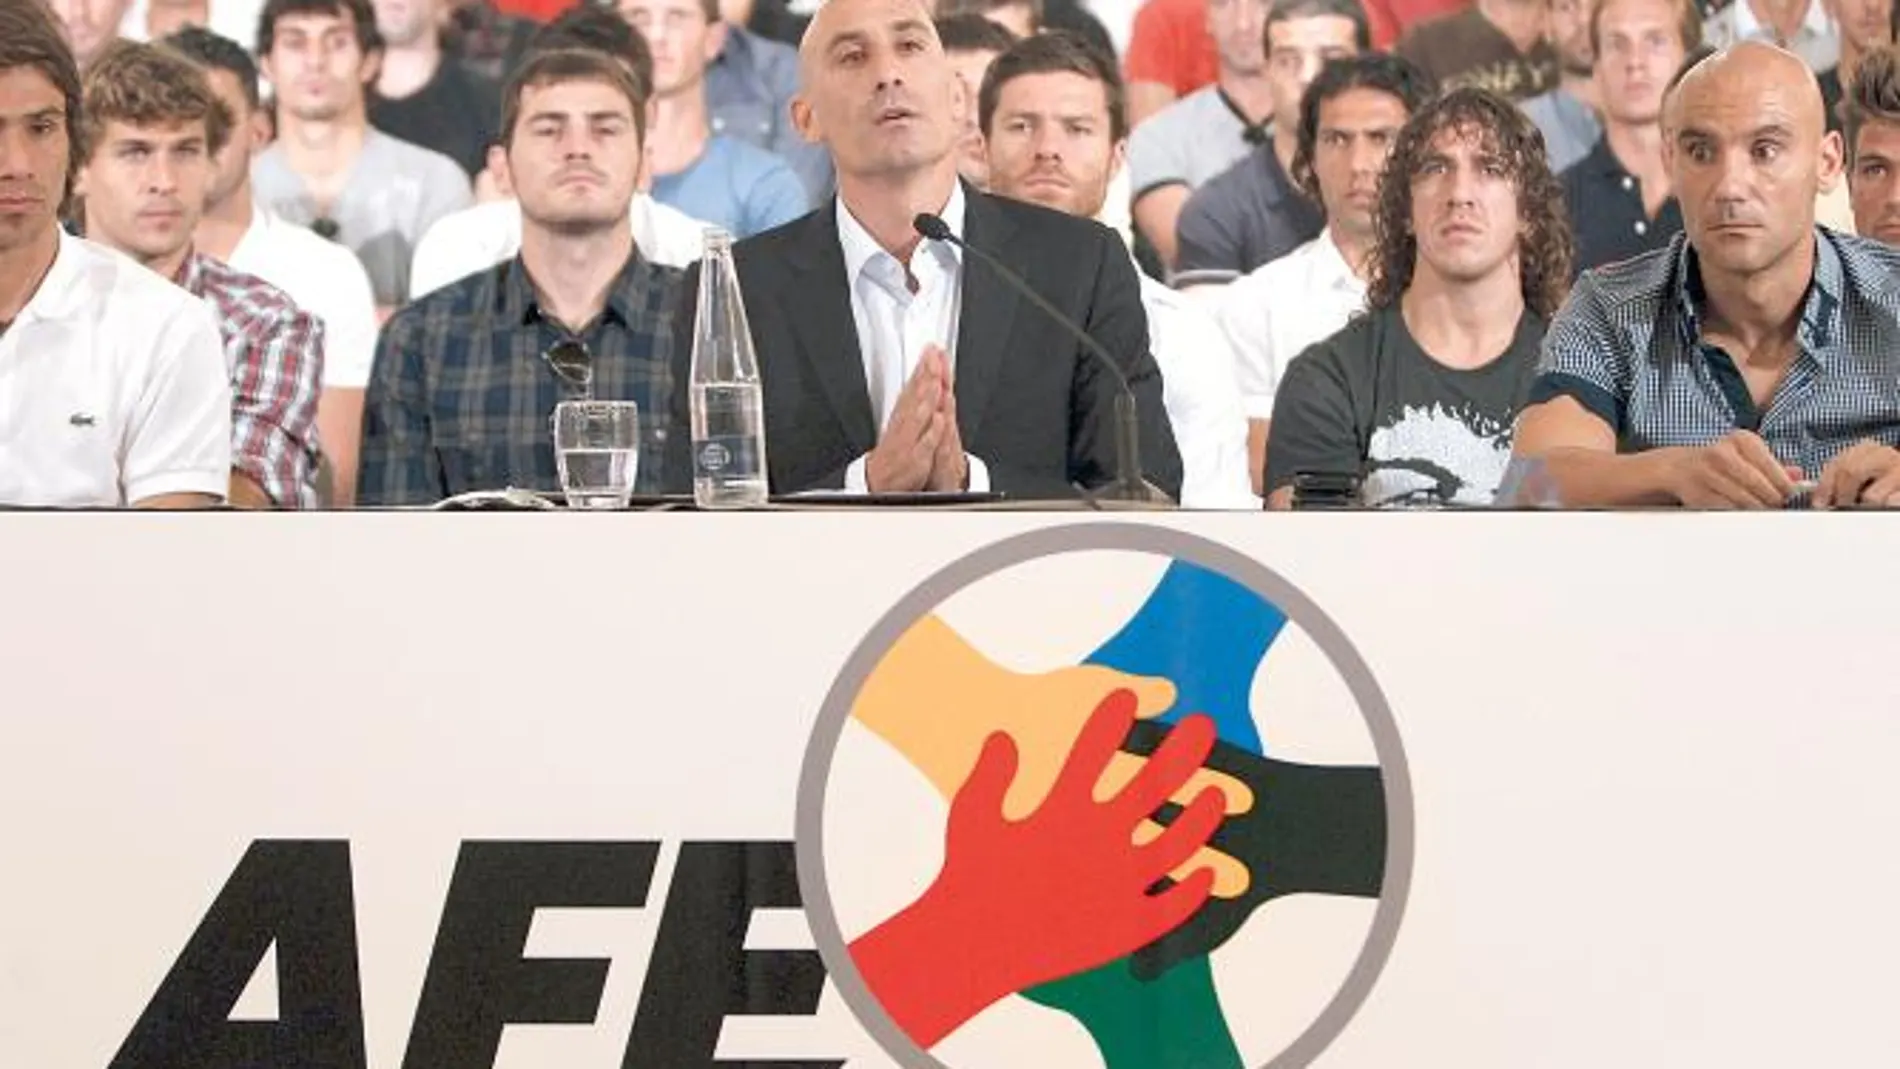 El presidente de la AFE, Luis Rubiales, se dirige a los medios para anunciar la huelga con Movilla a su izquierda, Ponzio a su derecha, y Llorente, Casillas, Puyol y Xabi Alonso detrás